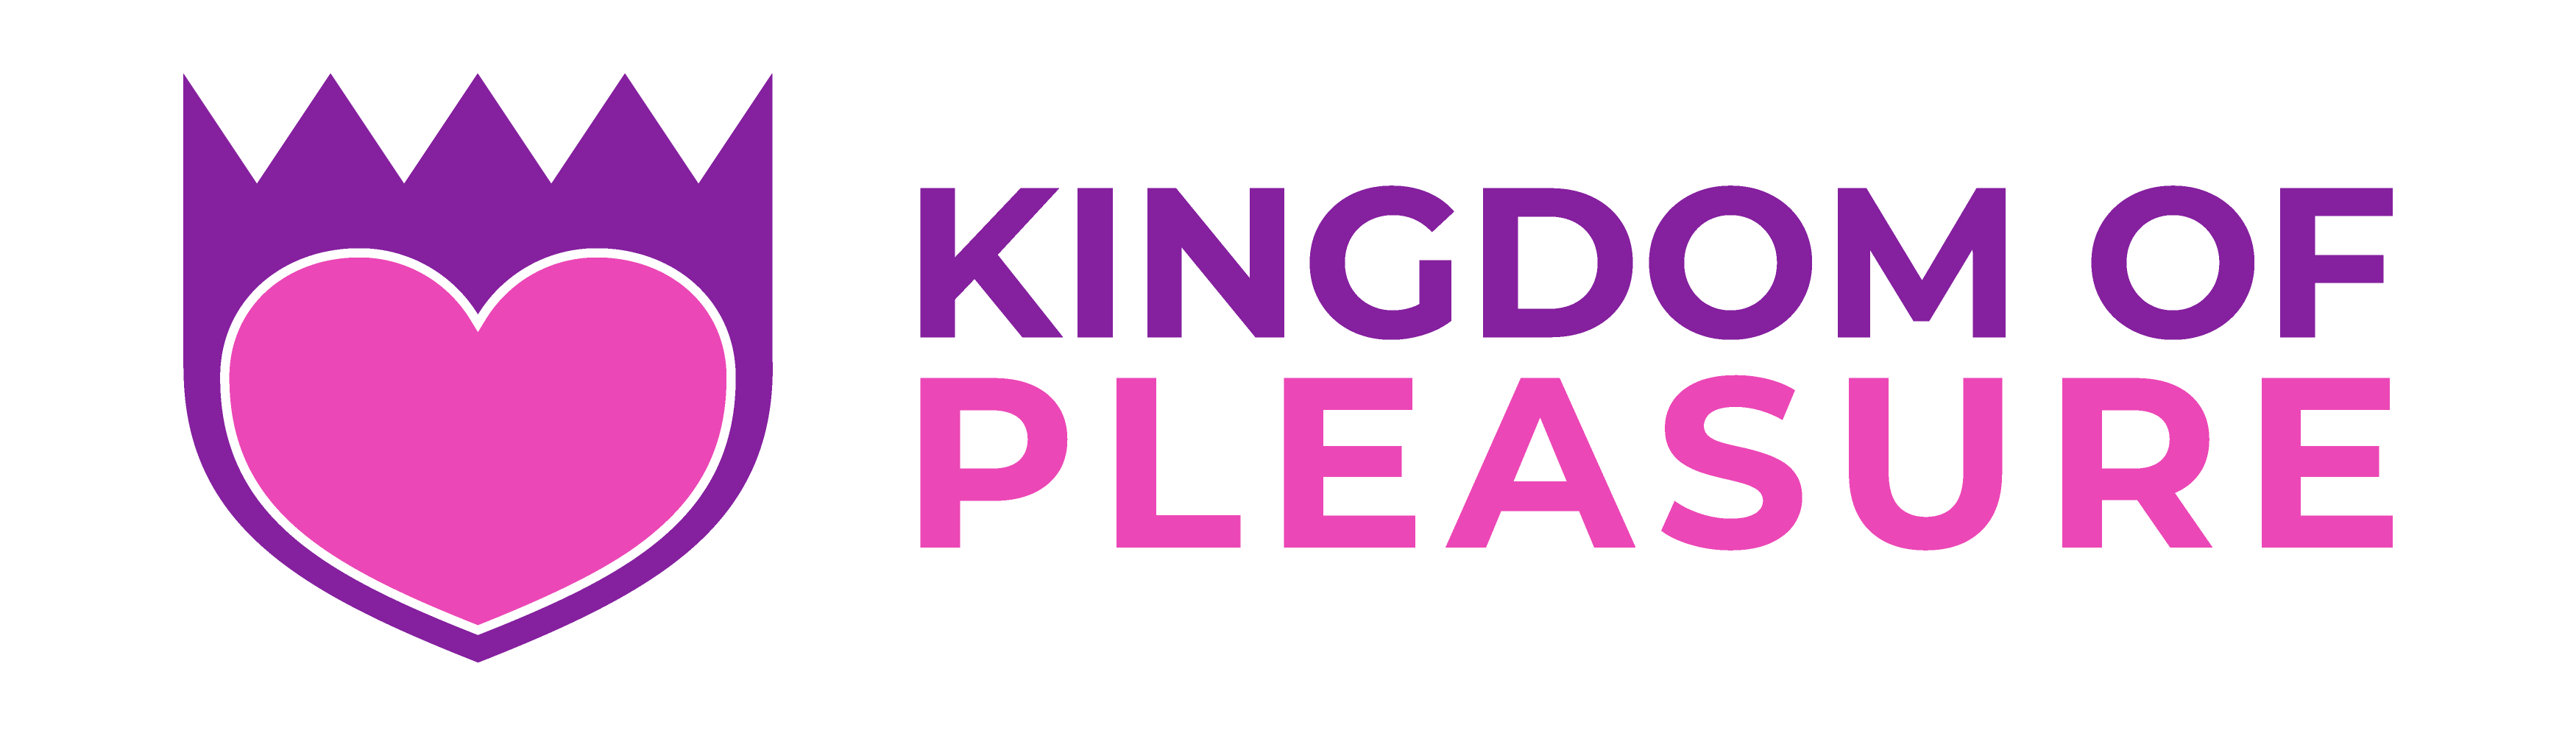 Kingdom Of Pleasure